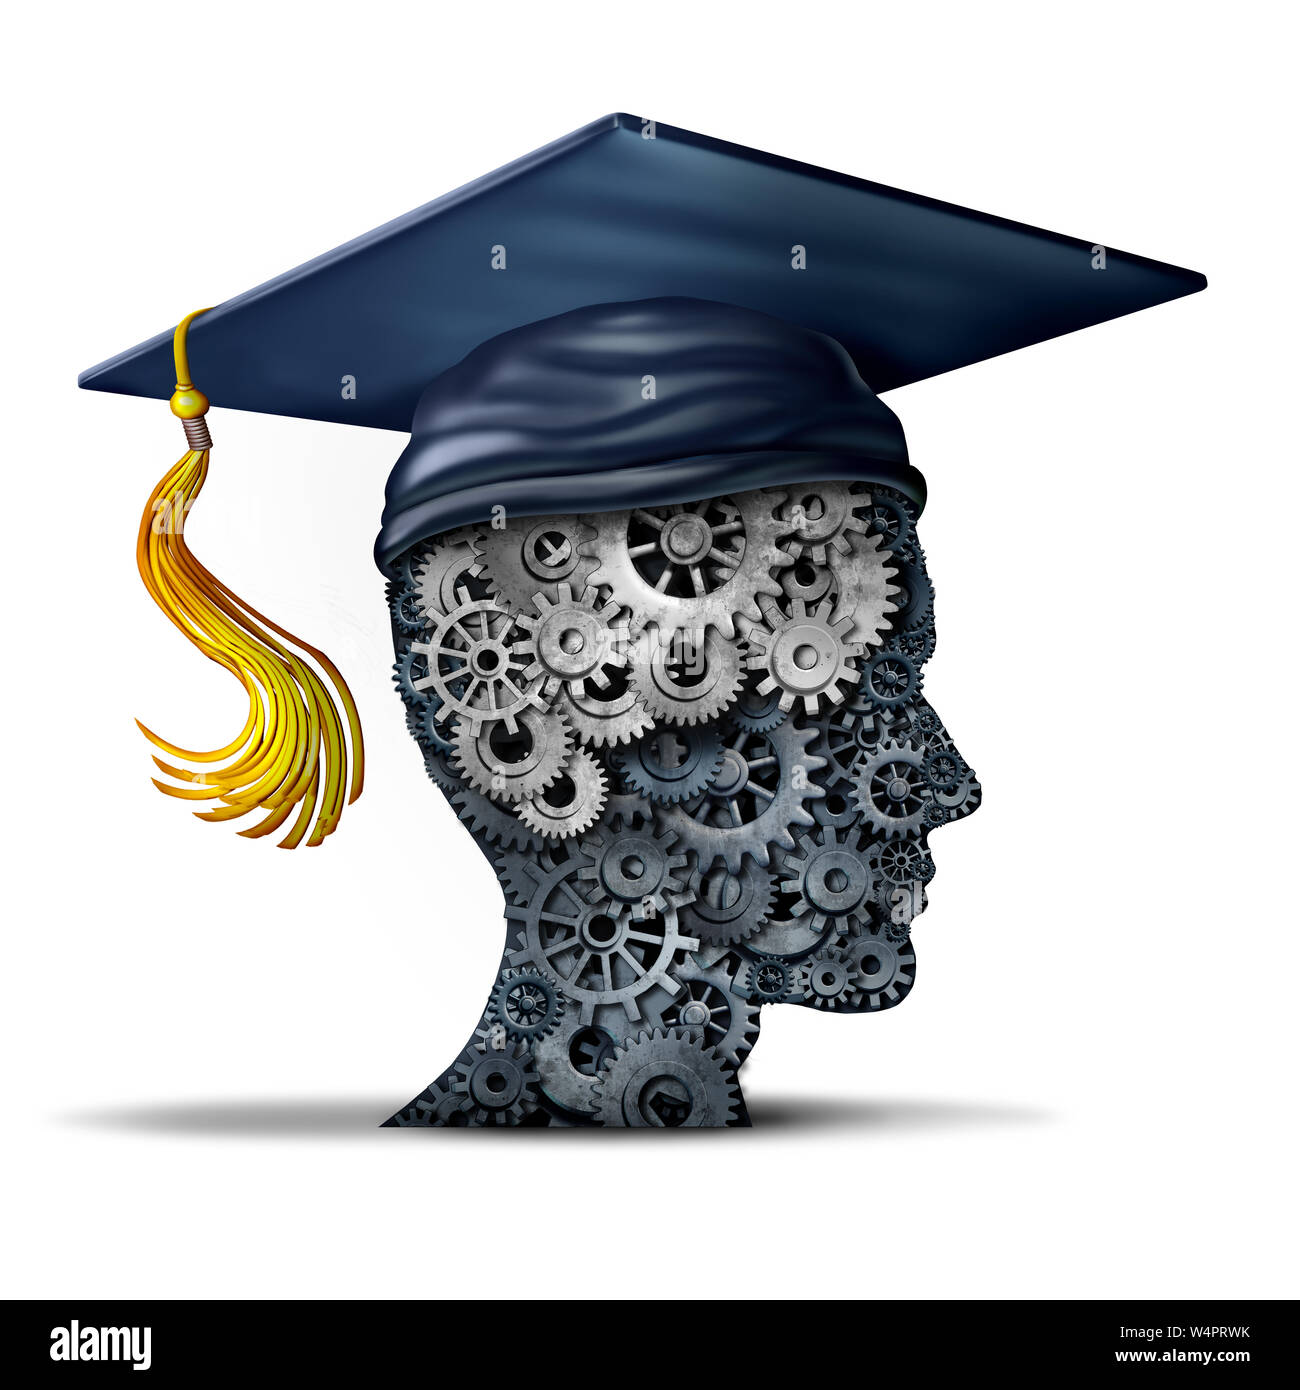 Business Training Konzept der Unternehmen Bildung und Arbeit Fähigkeiten oder Karriere skill Idee und Engineering student Symbol als 3D-Darstellung. Stockfoto